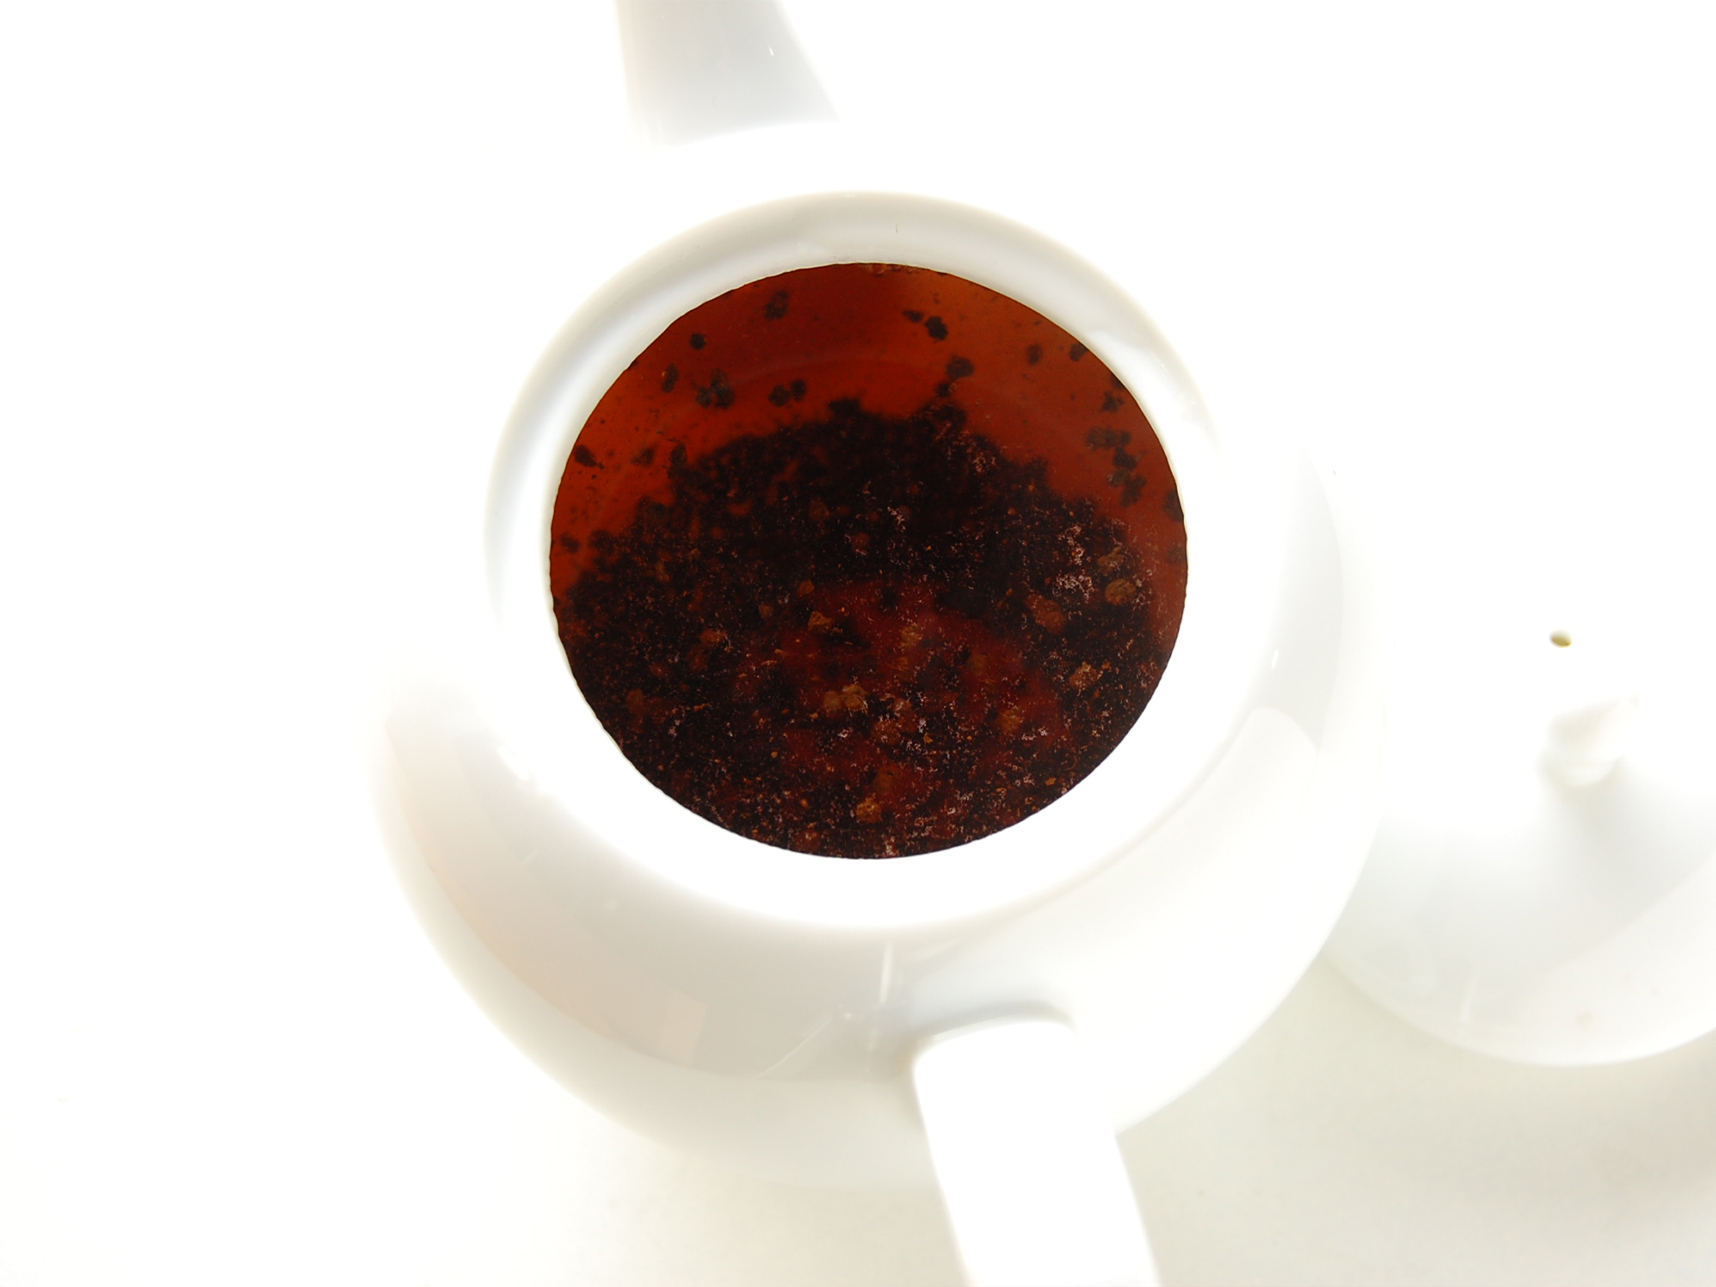 紅茶をおいしく淹れる上白磁の球体ティーポット 送料無料 - famfam